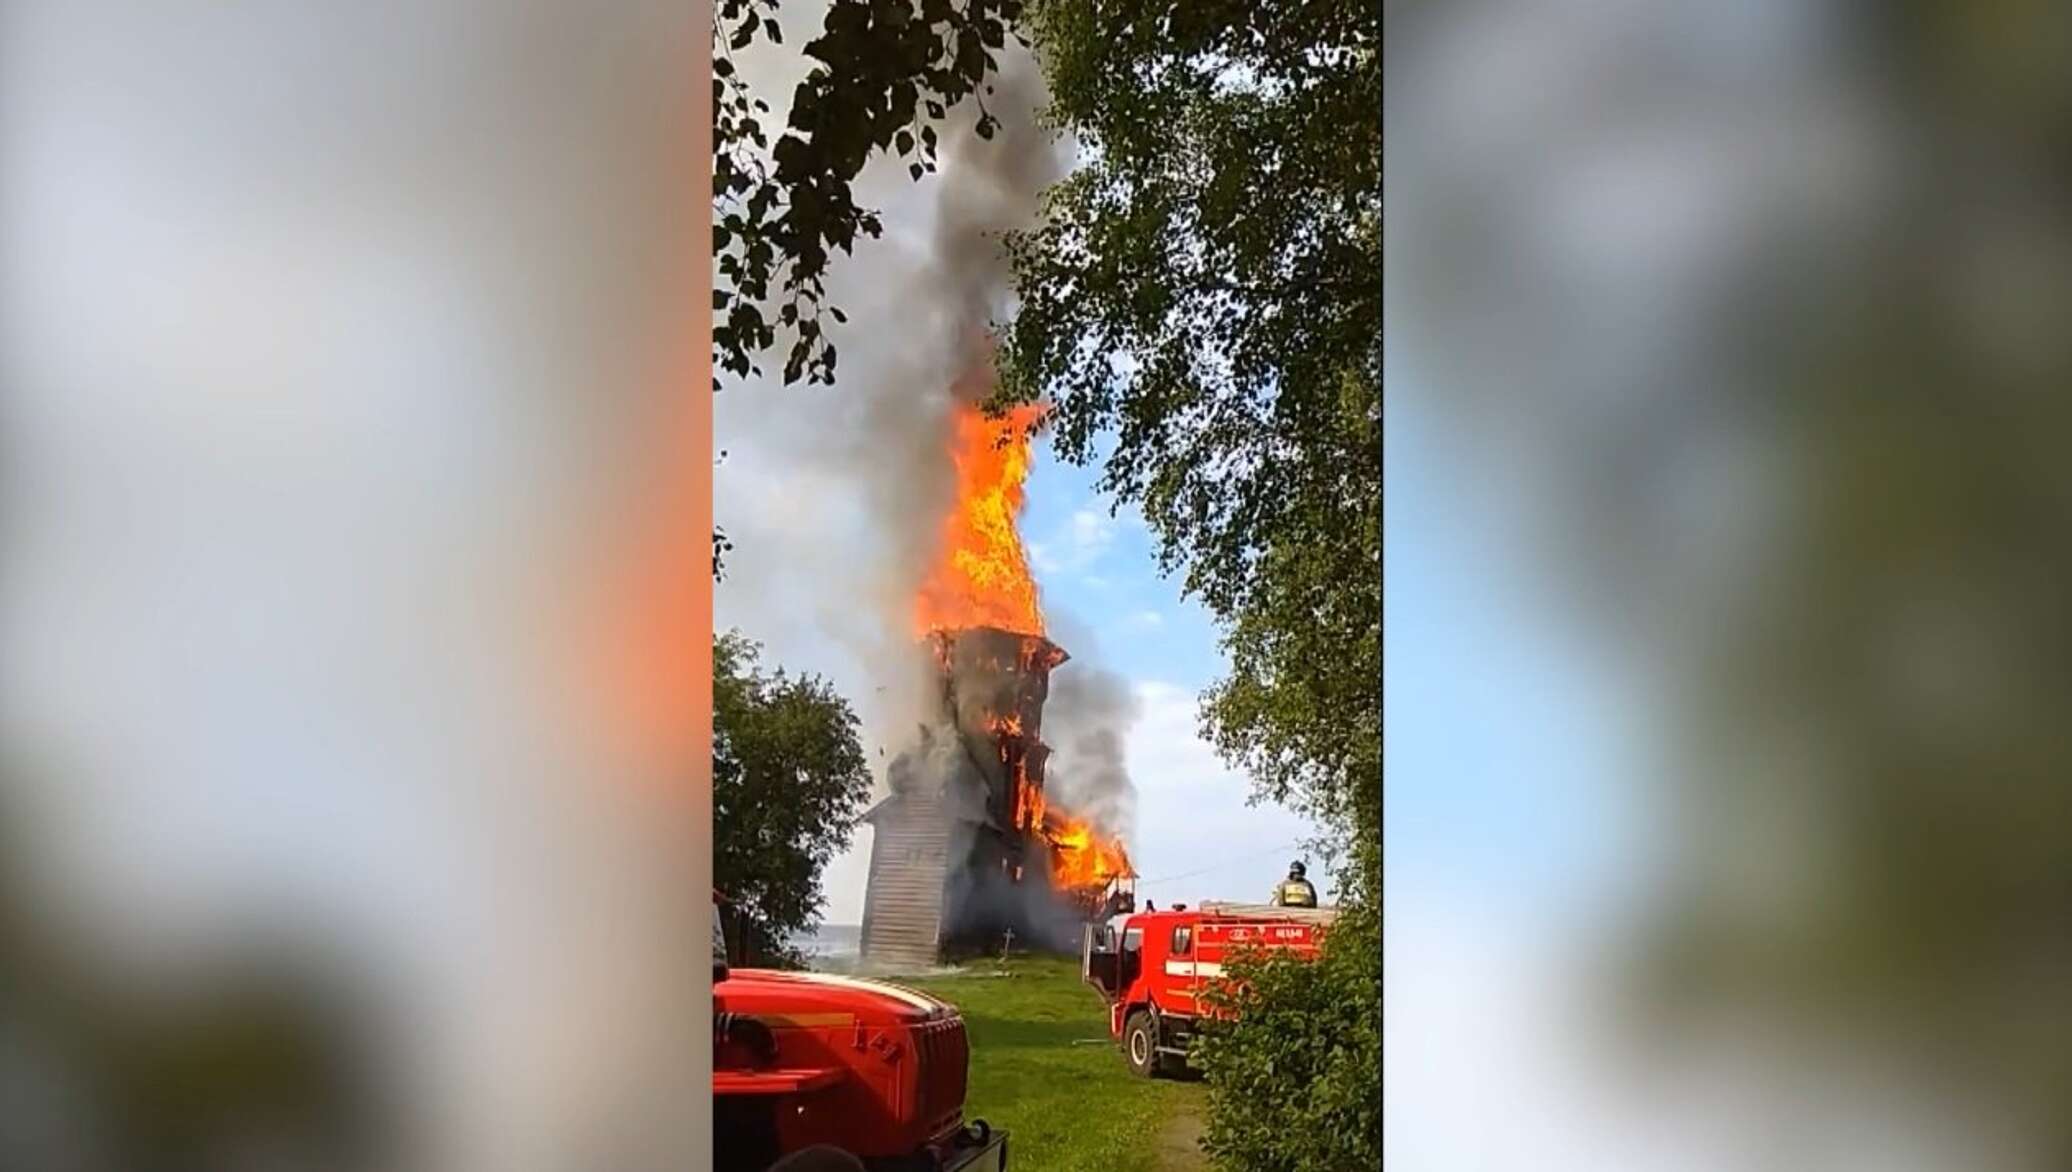 Сгоревшая церковь в карелии фото до пожара